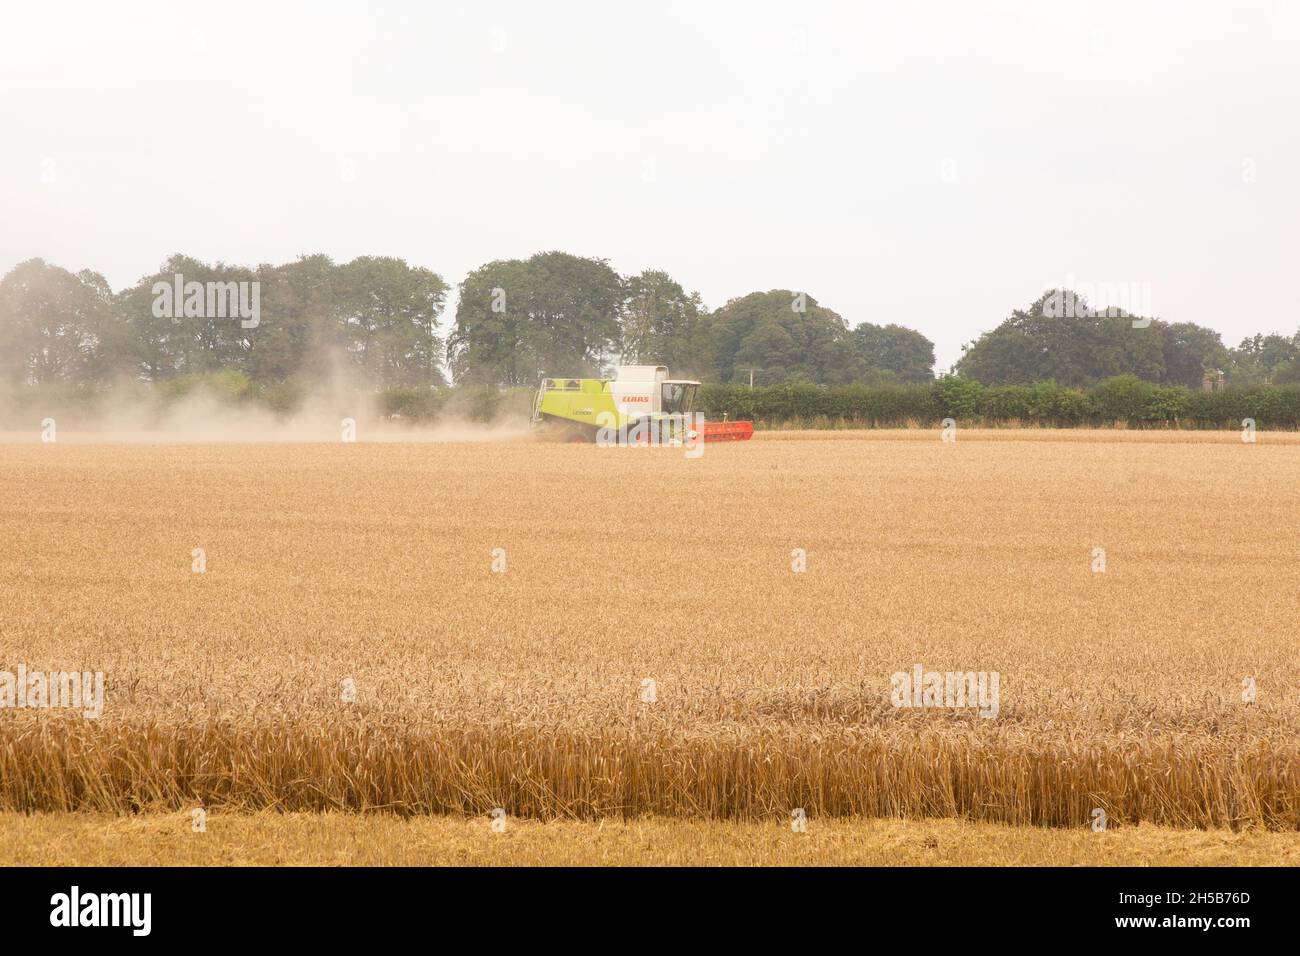 Moissonneuse-batteuse Claas travaillant dans un champ de blé, Medstead, Hampshire, Angleterre, Royaume-Uni. Banque D'Images